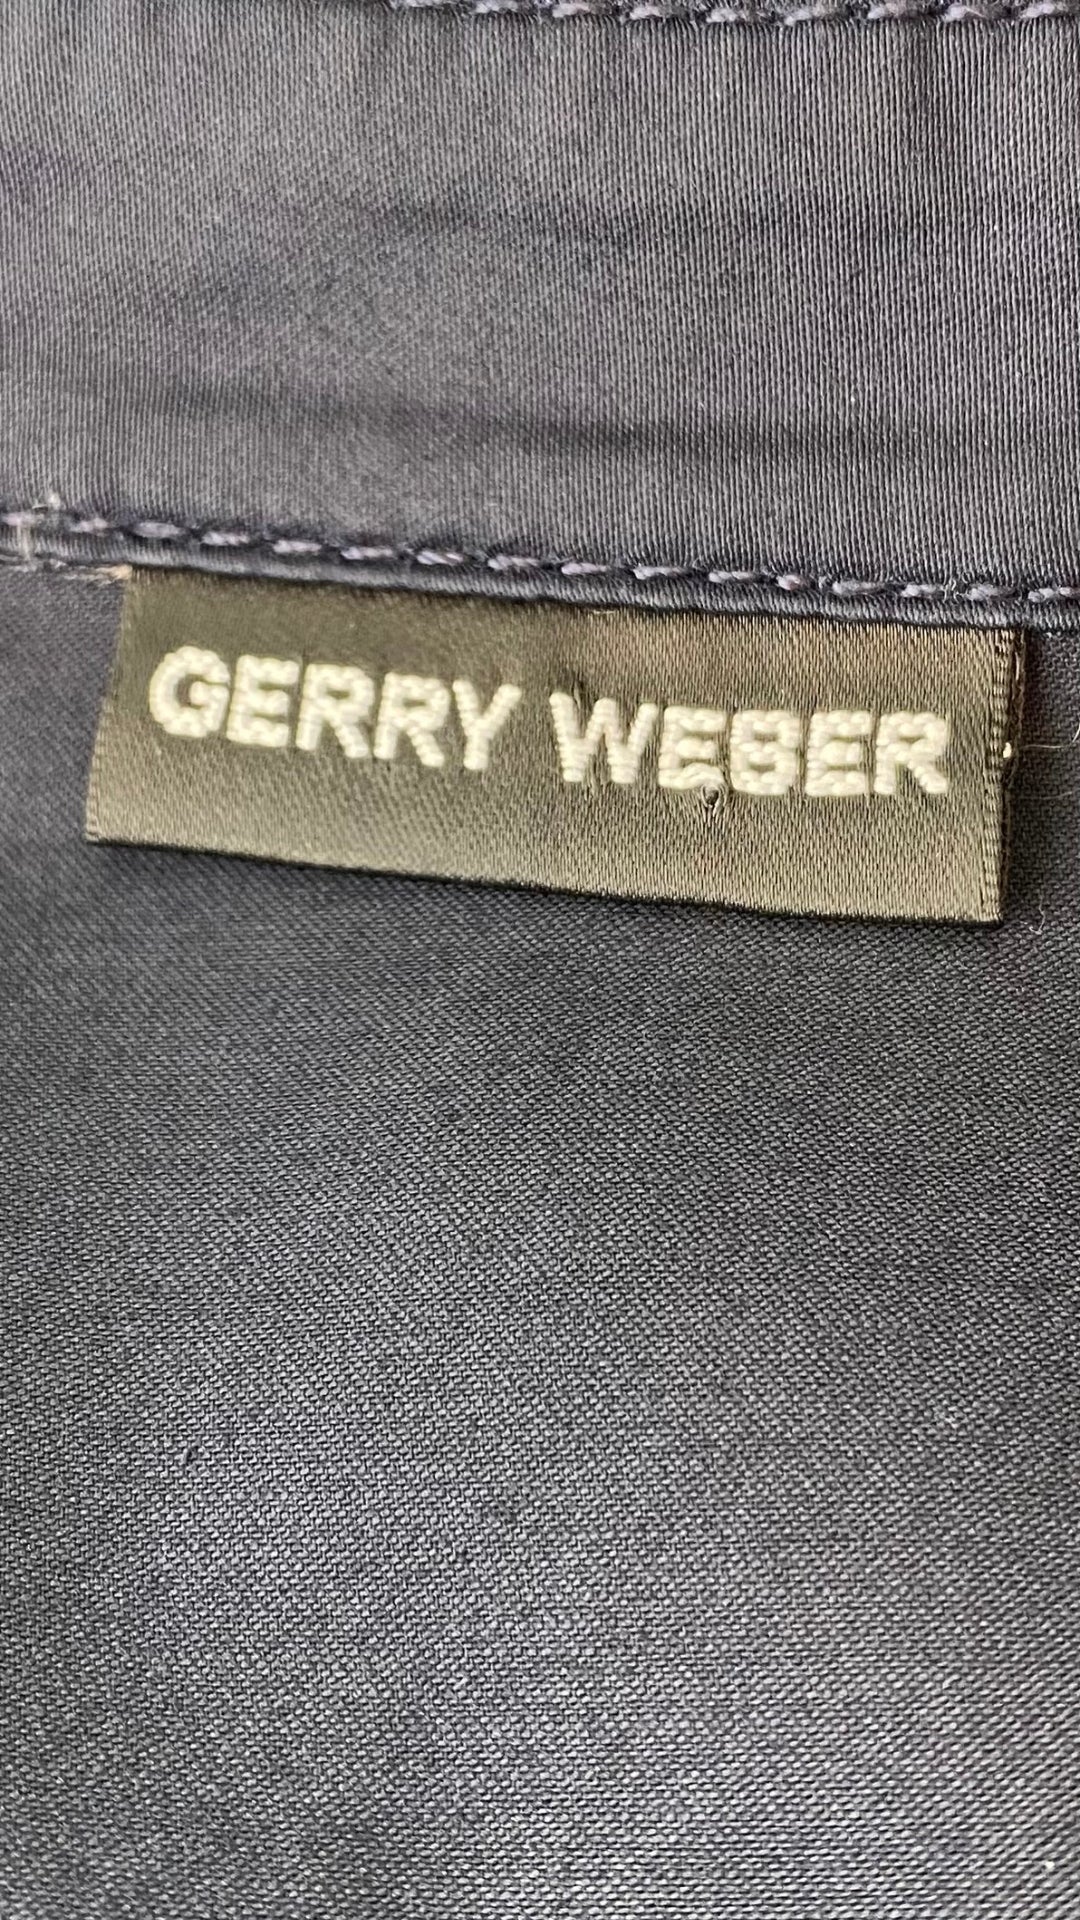 Robe chemisier marine avec poches Gerry Weber, taille large ou xl. Vue de l'étiquette de la marque.